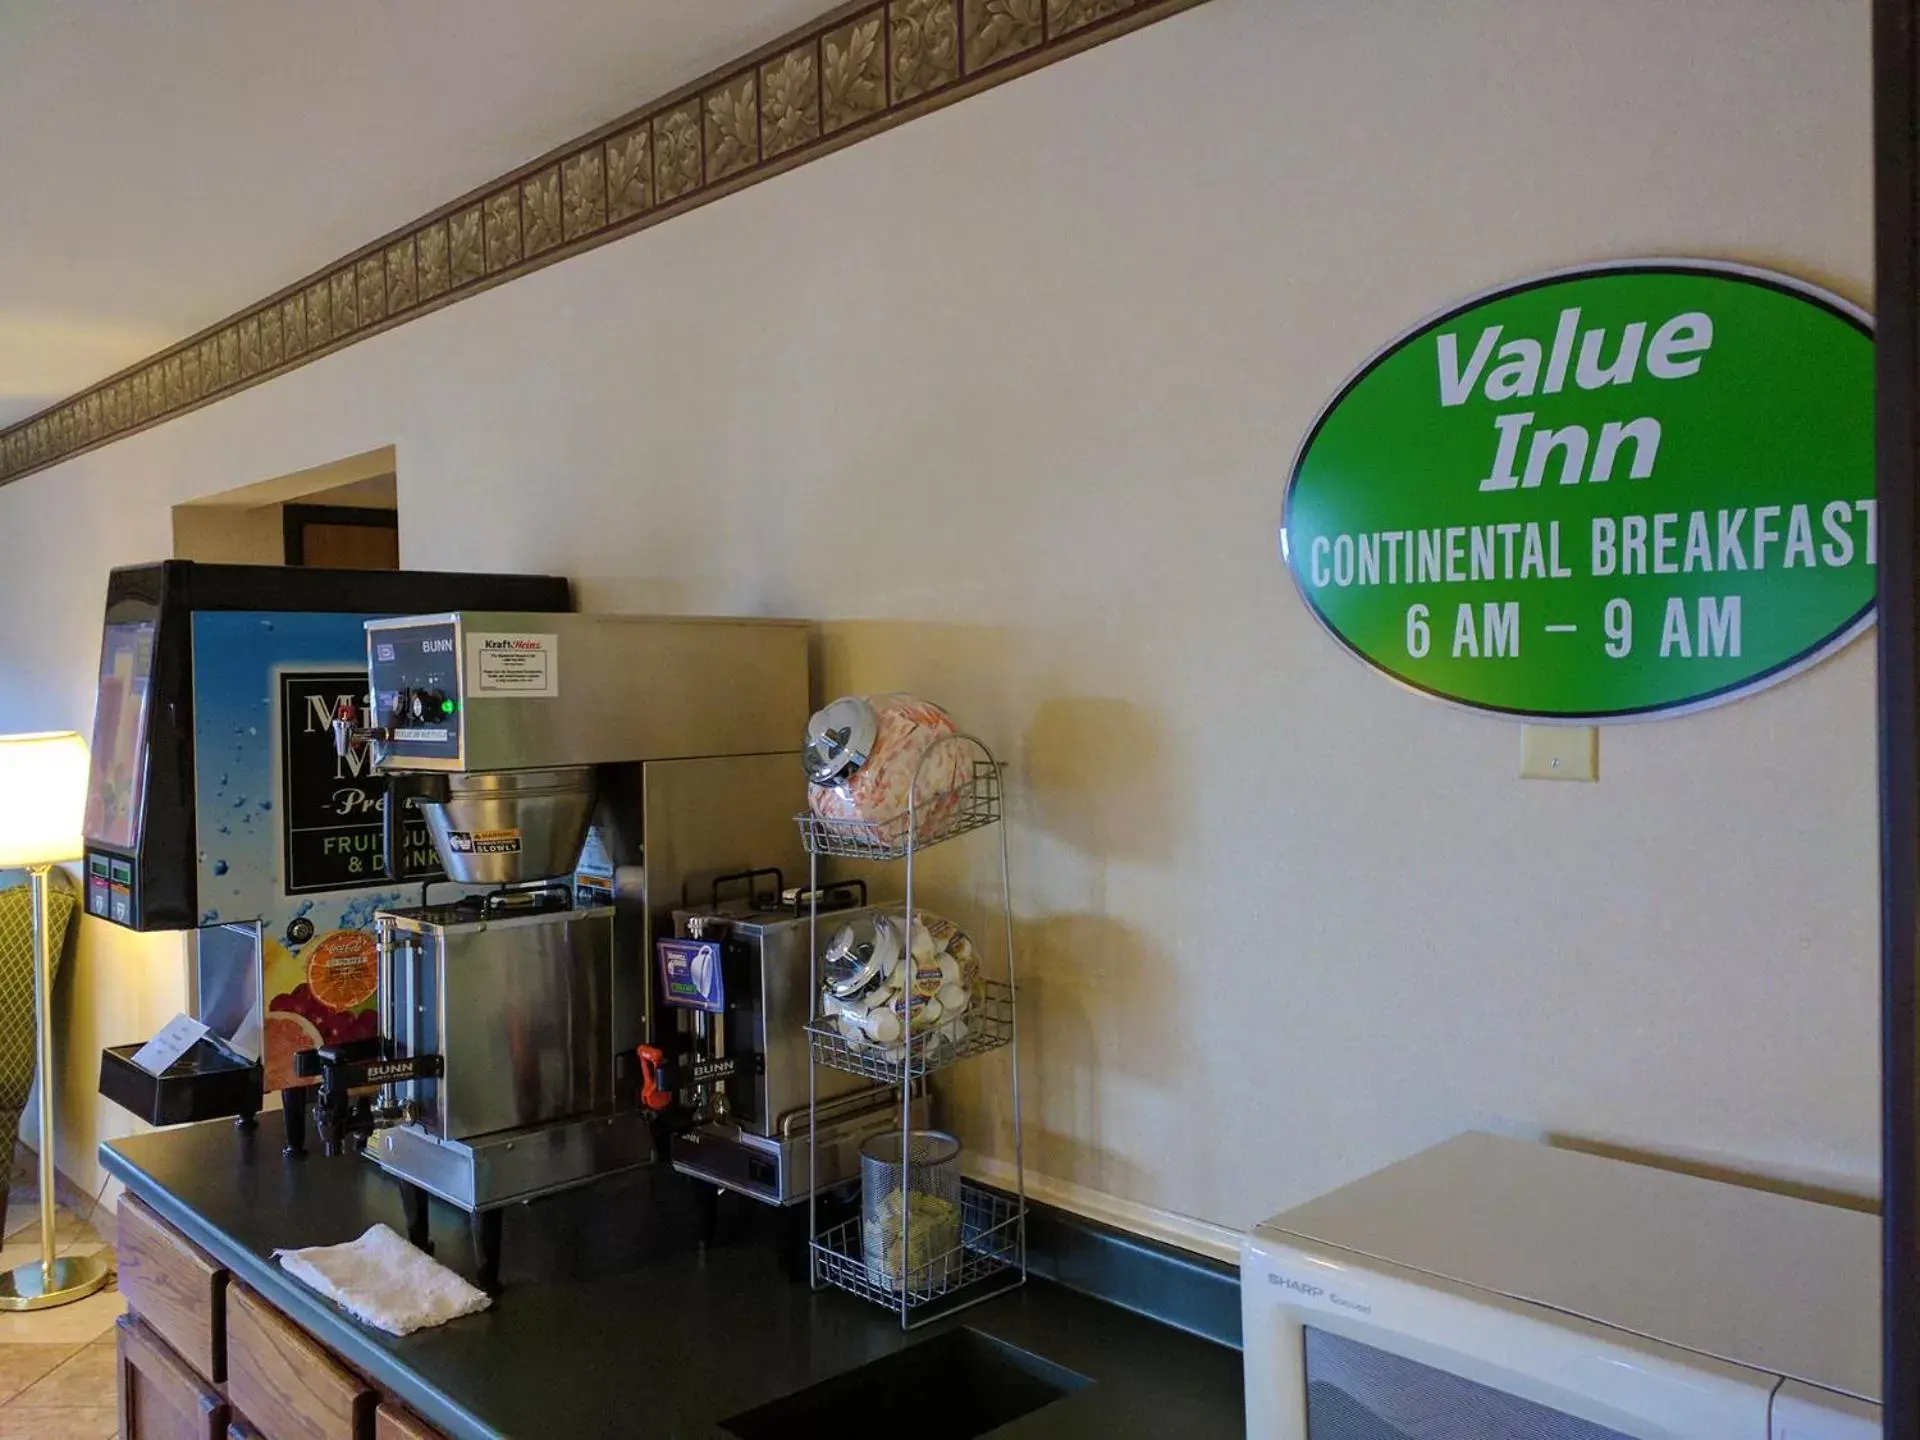 Kitchen/Kitchenette in Value Inn Harrisburg-York